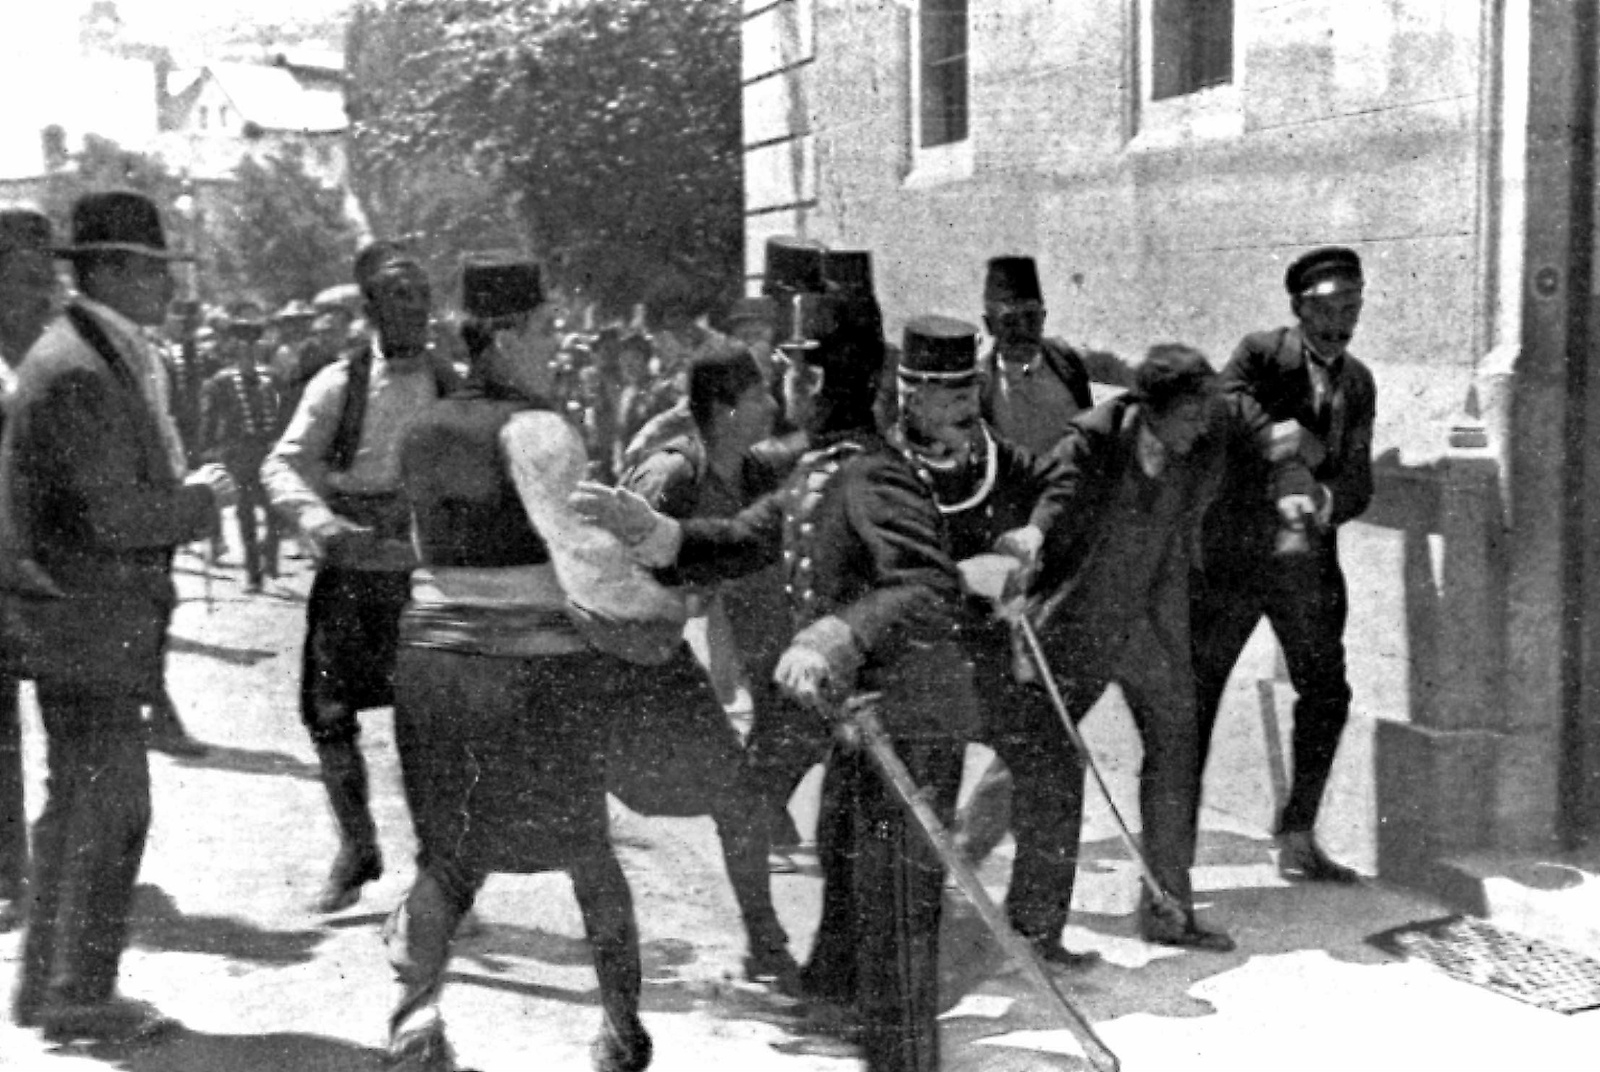 Mordet på den österrikisk-ungerske tronföljaren Franz Ferdinand blev gnistan som tände en kruttunna. På bilden arresteras gärningsmannen Gavrilo Princip efter skotten i Sarajevo som var en av de utlösande faktorerna till första världskriget.